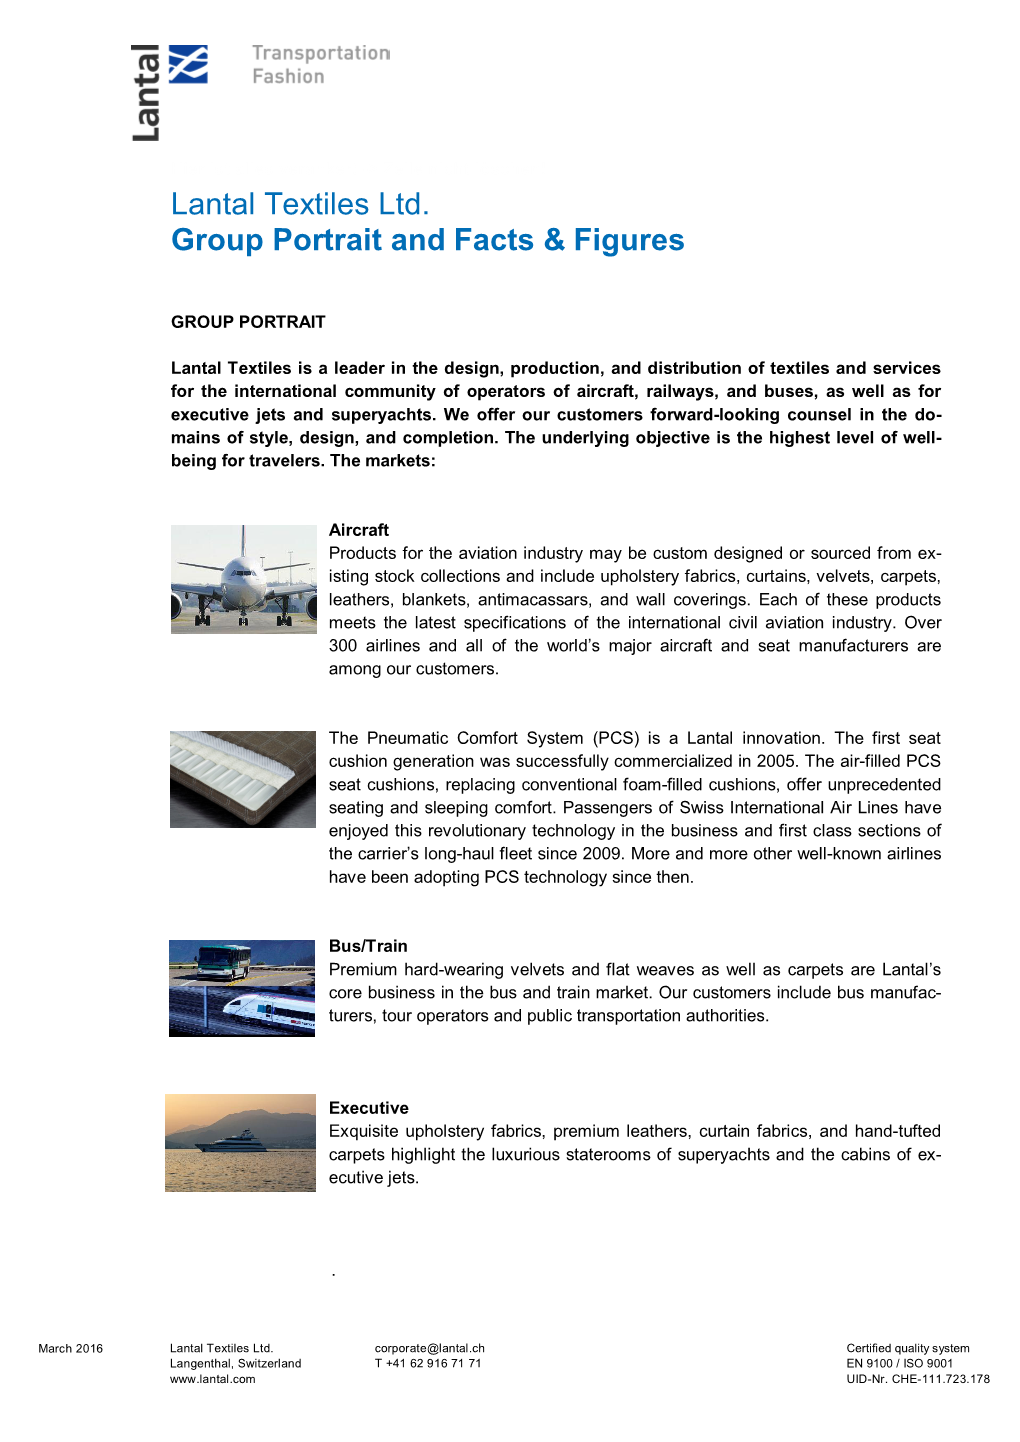 Lantal Textiles Ltd. Group Portrait and Facts & Figures